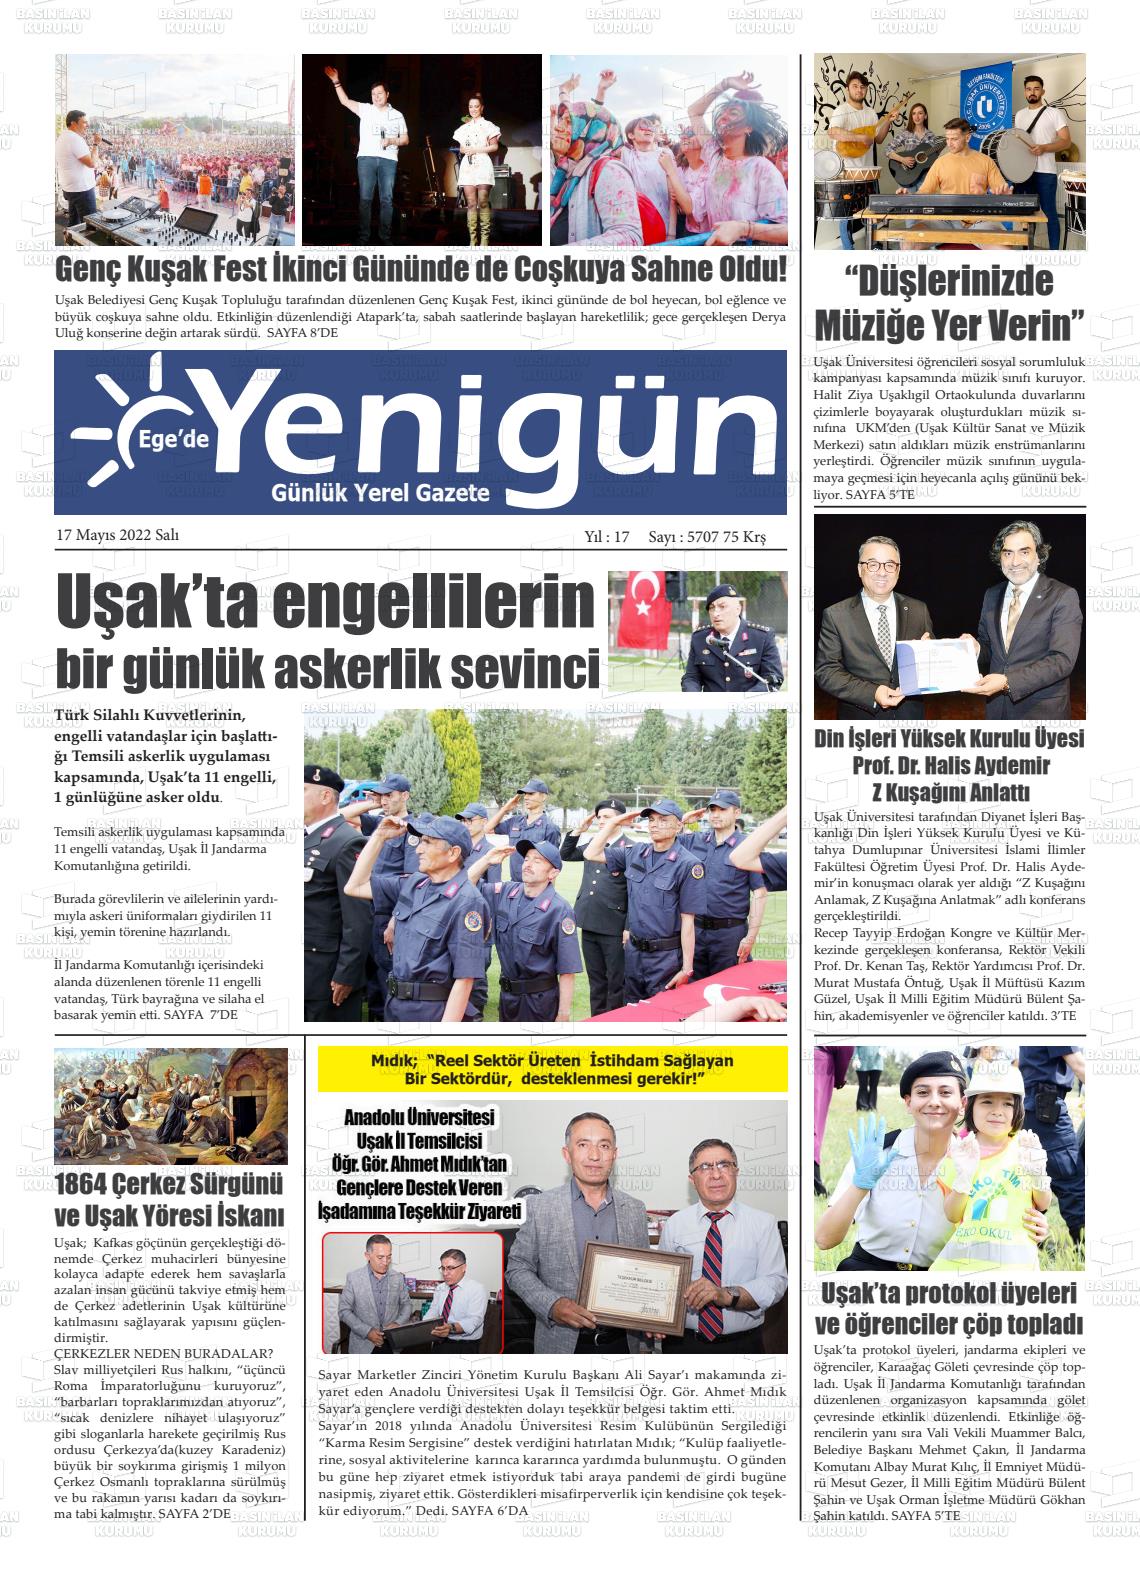 17 Mayıs 2022 EGE'DE YENİGÜN GAZETESİ Gazete Manşeti